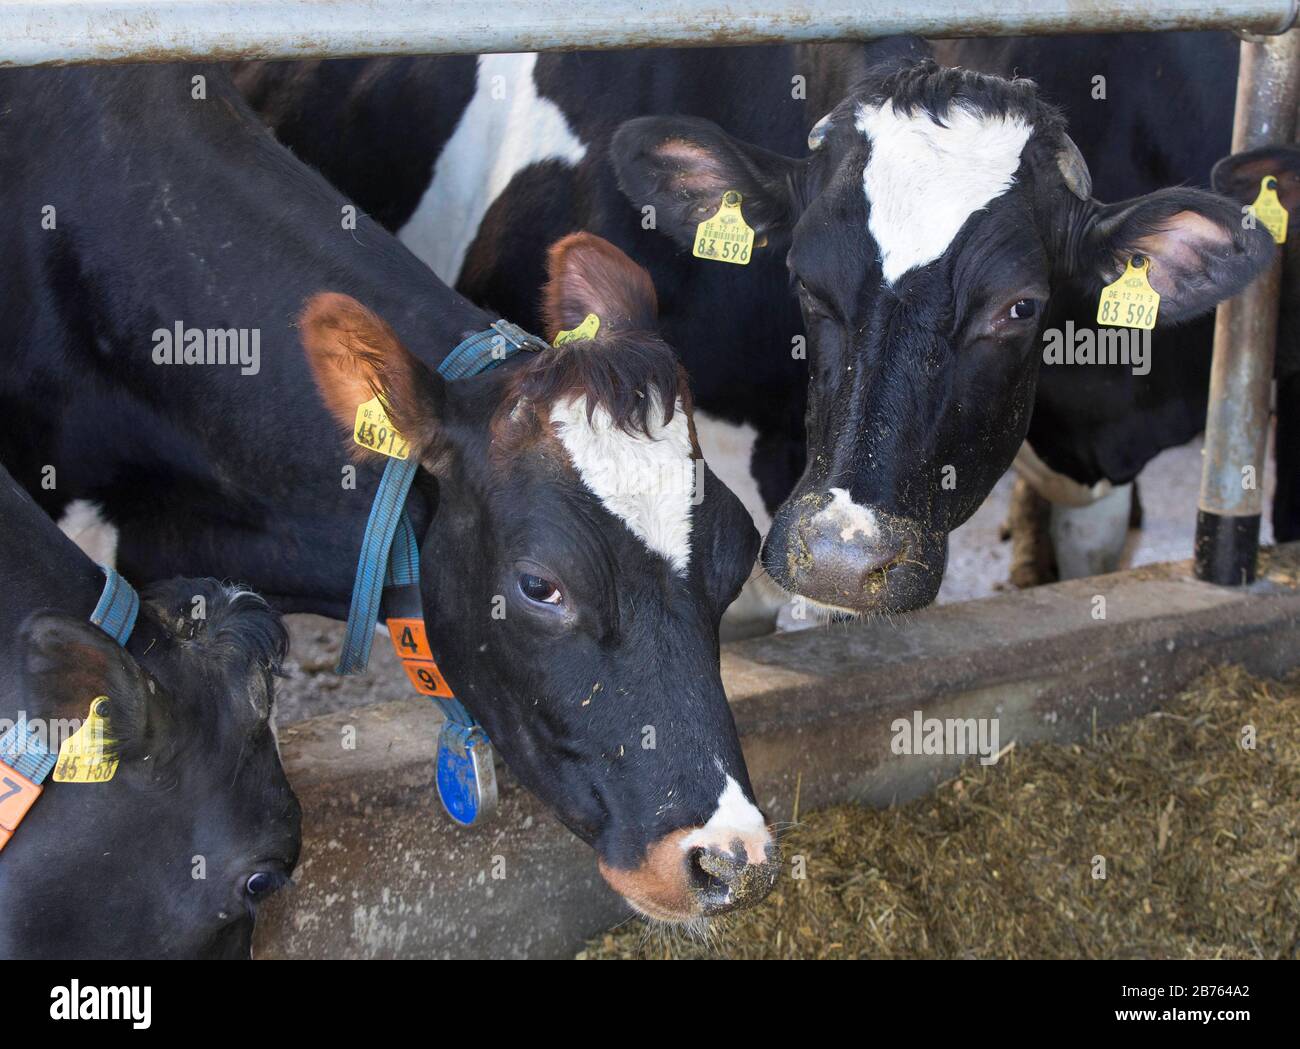 Kühe stehen am 16.03.2016 in Nauen, Brandenburg, in einer Scheune einer Milchanlage einer Molkerei. [Automatisierte Übersetzung] Stockfoto